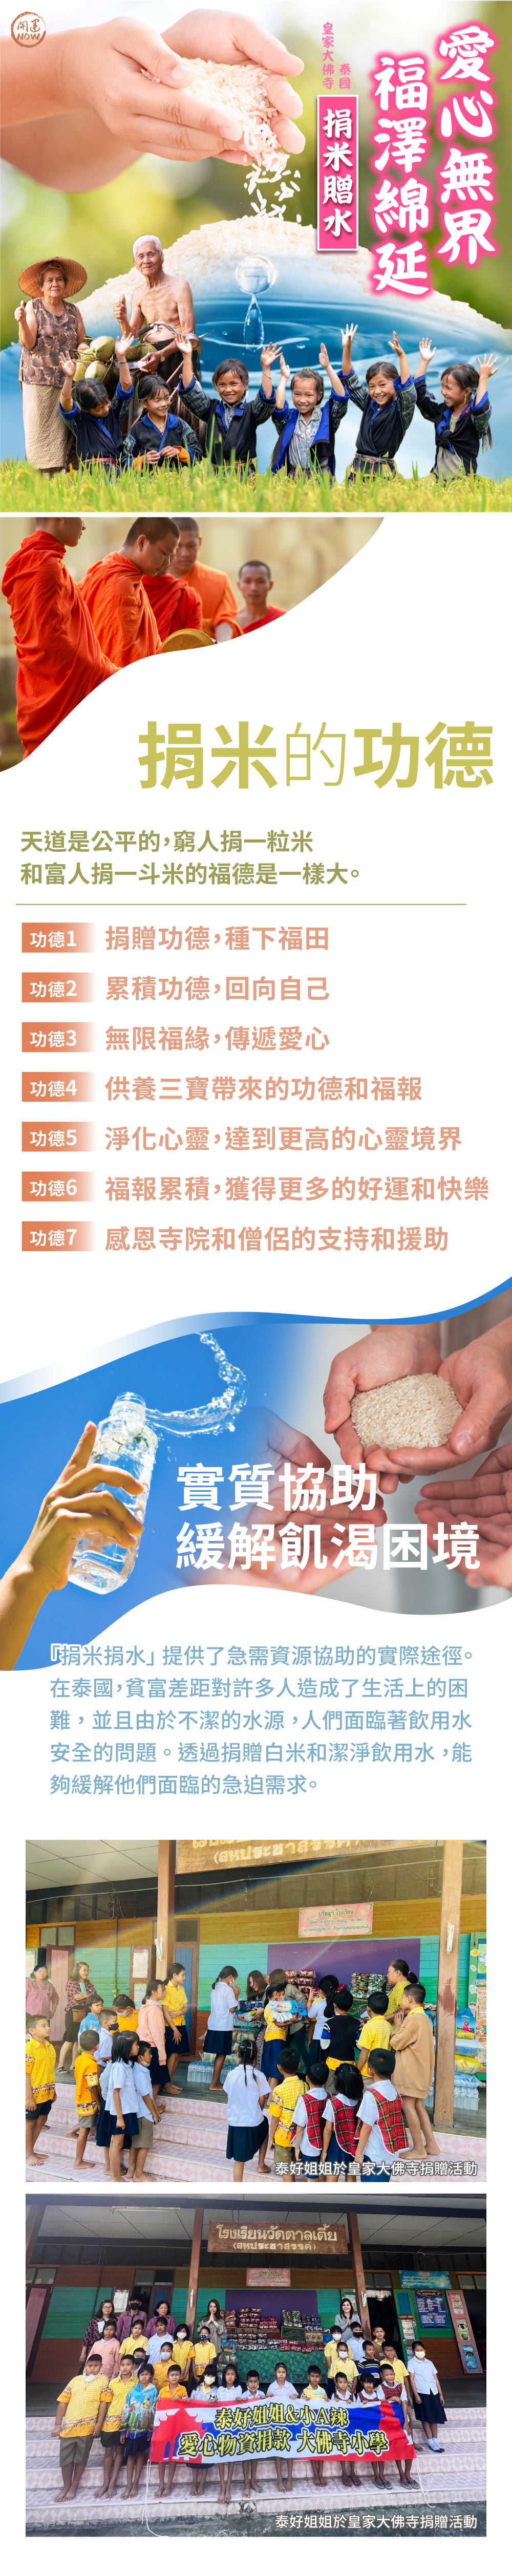 開運NOW-【福澤功德包】捐米贈水套組 產品說明